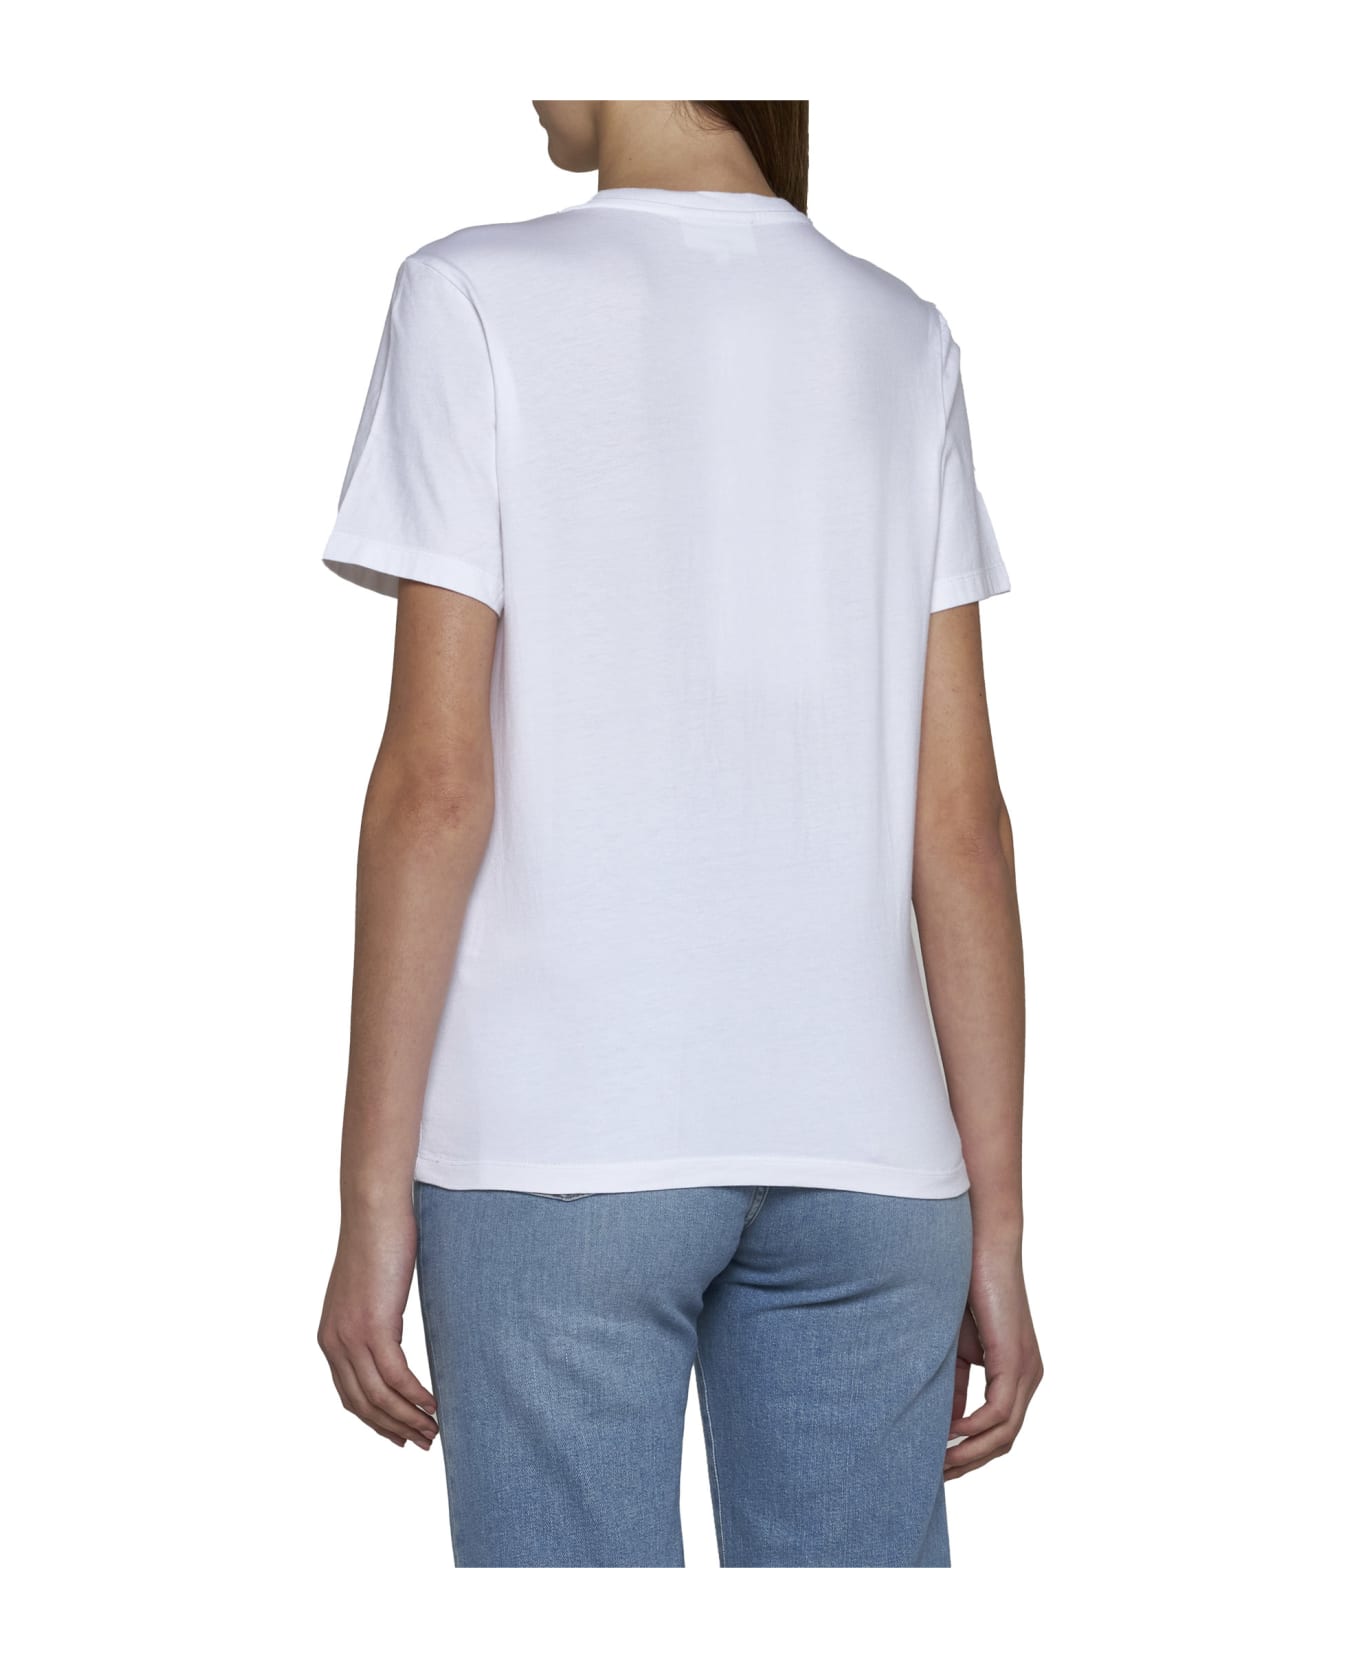 Maison Kitsuné T-Shirt - White